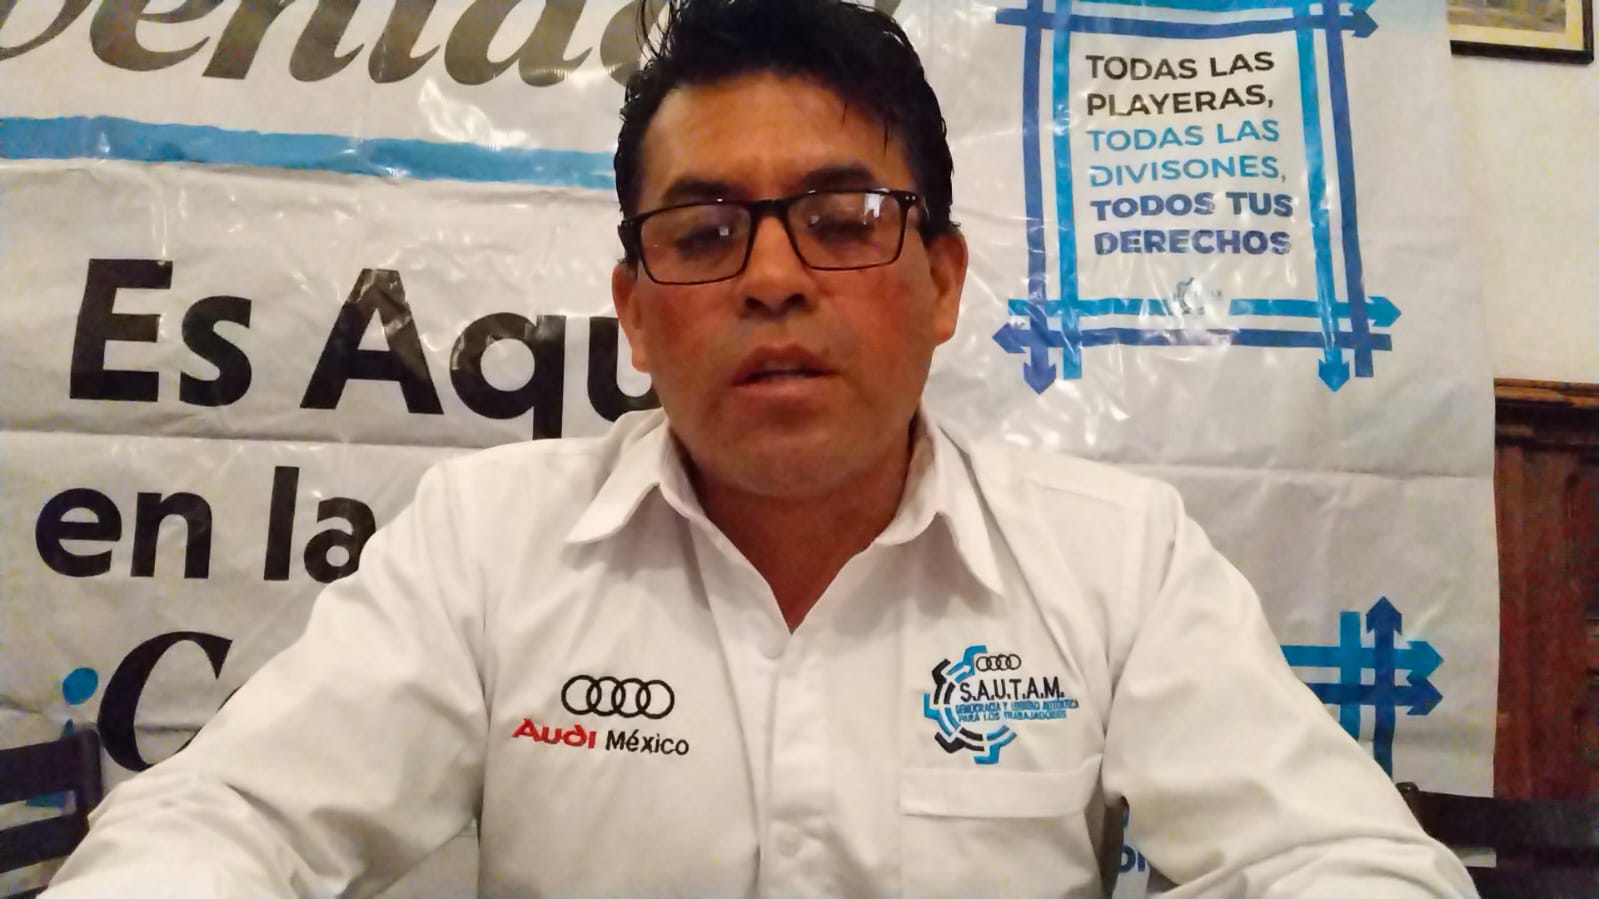 Video desde Puebla: Audi confirma rechazo a su propuesta de aumento salarial